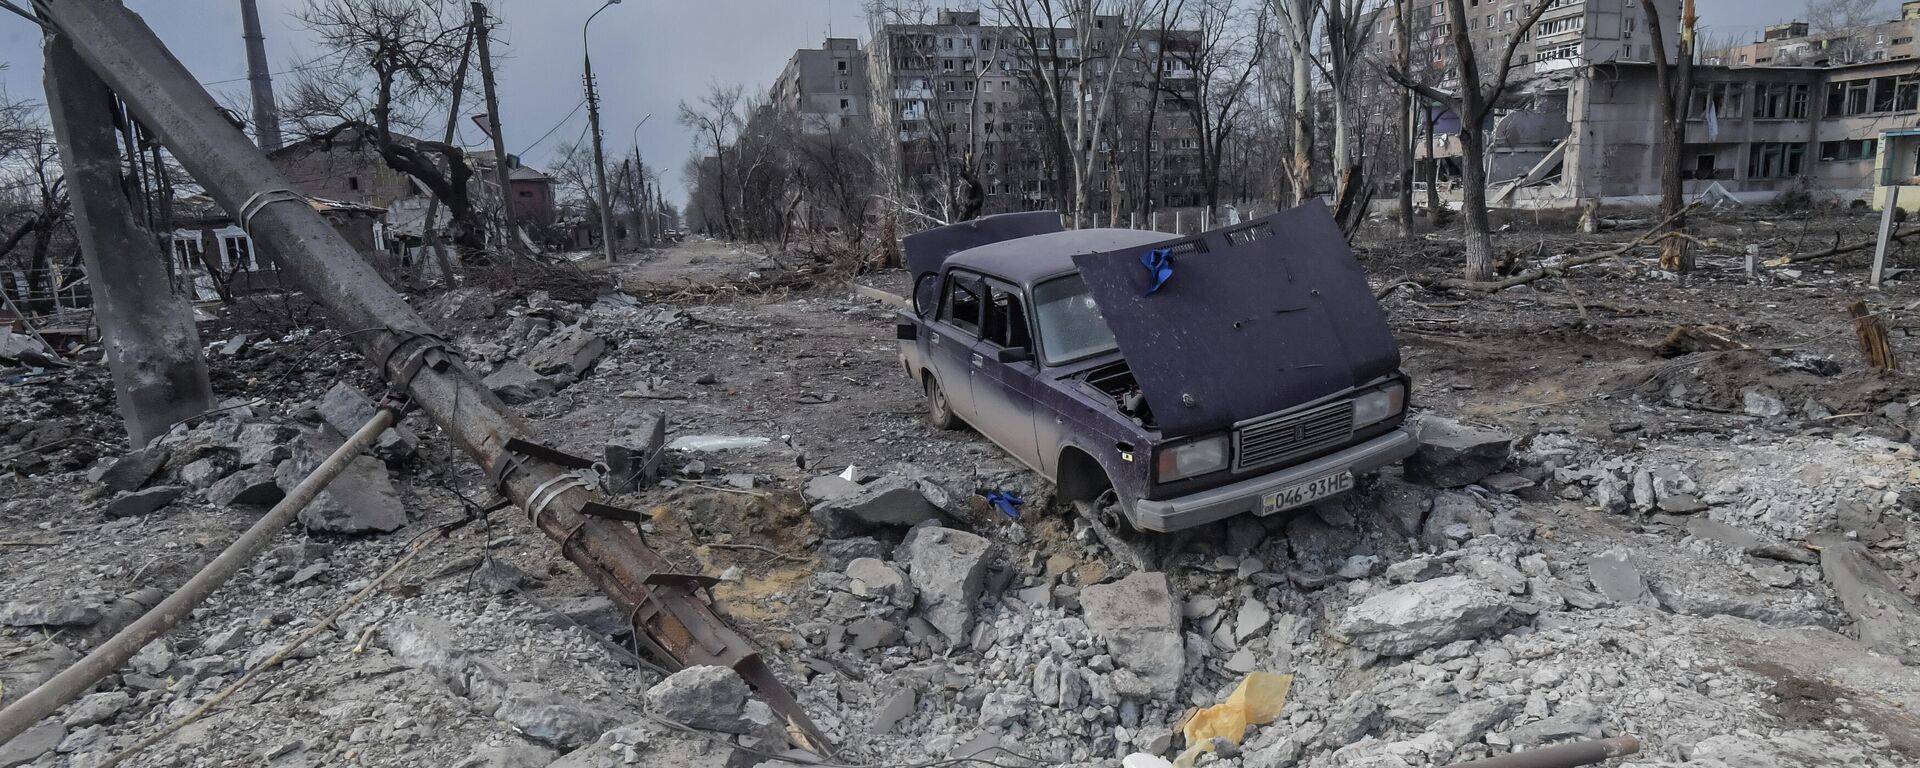 Destroyed houses and a broken car in Mariupol - Sputnik International, 1920, 20.03.2022